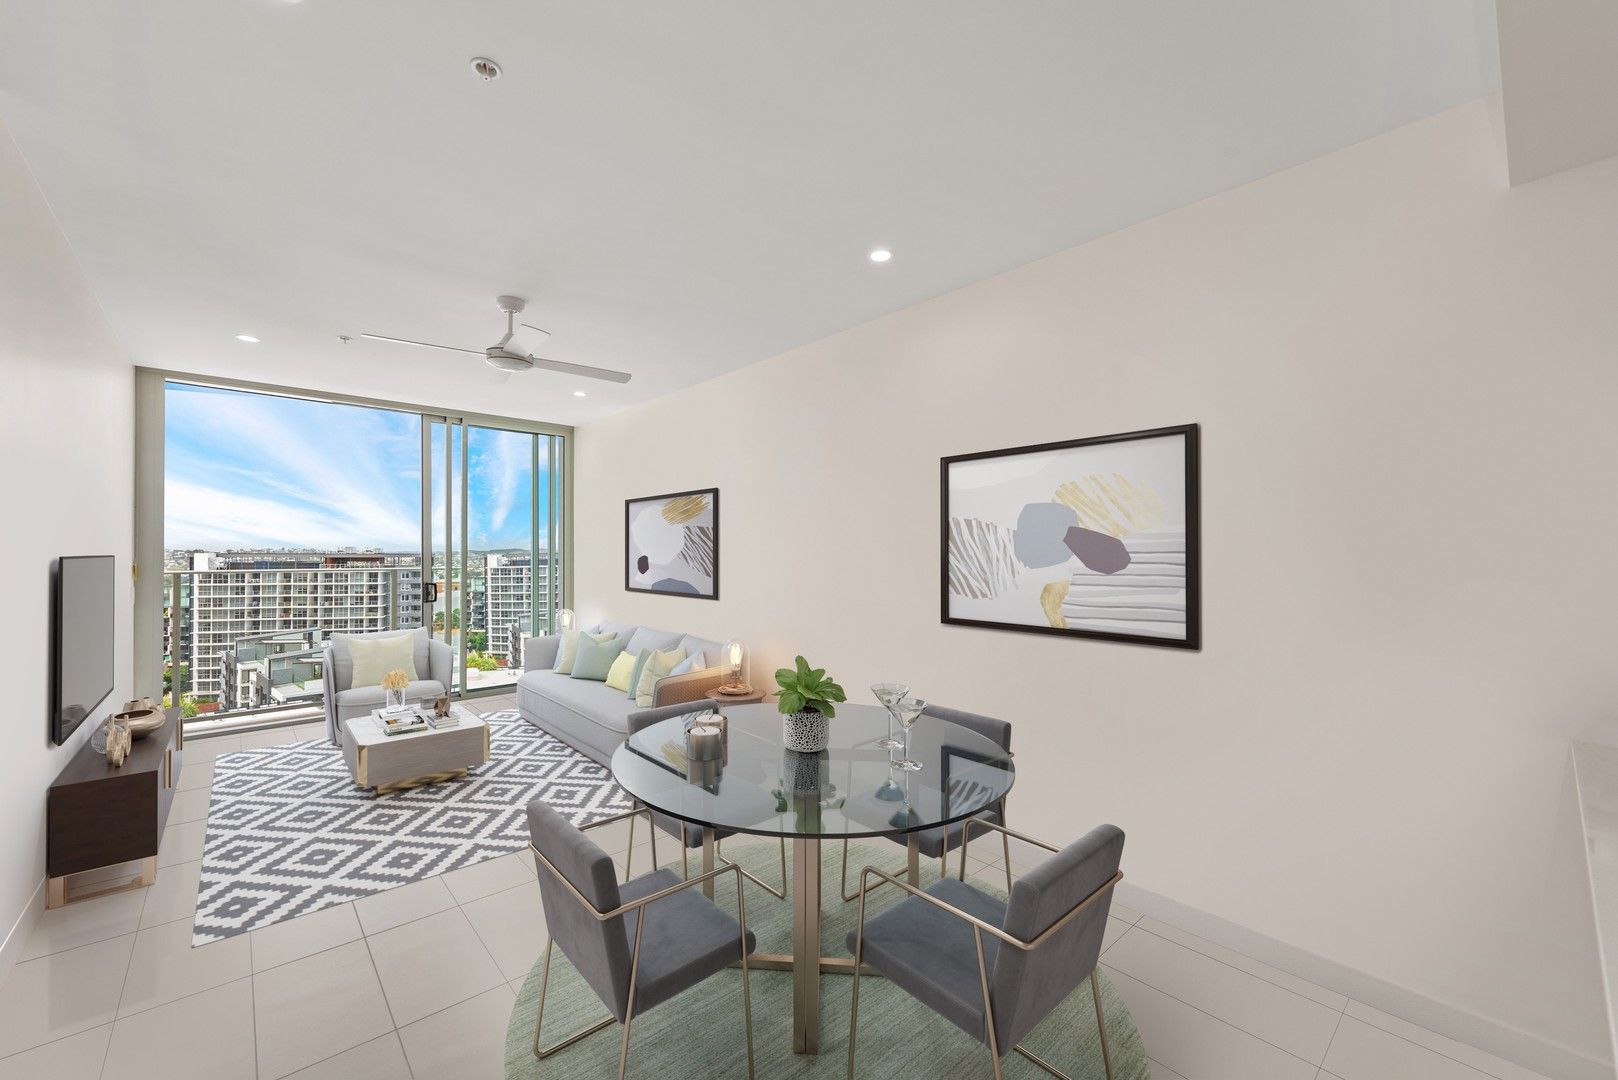 1 bedrooms Apartment / Unit / Flat in 11402/88 Doggett Street NEWSTEAD QLD, 4006